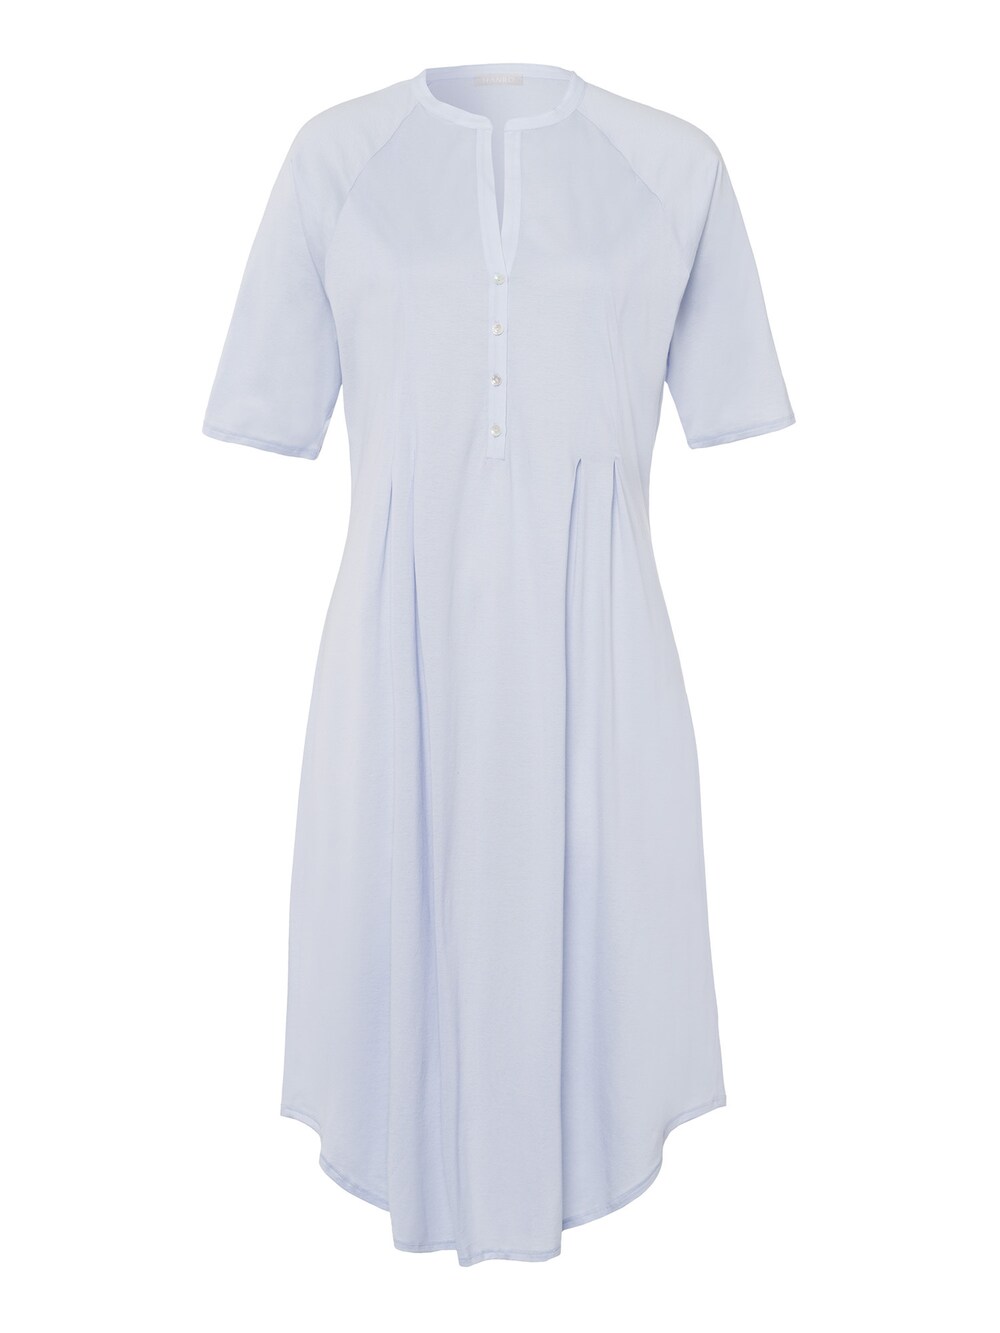 Ночная рубашка Hanro Cotton Deluxe 100cm, светло-синий фото